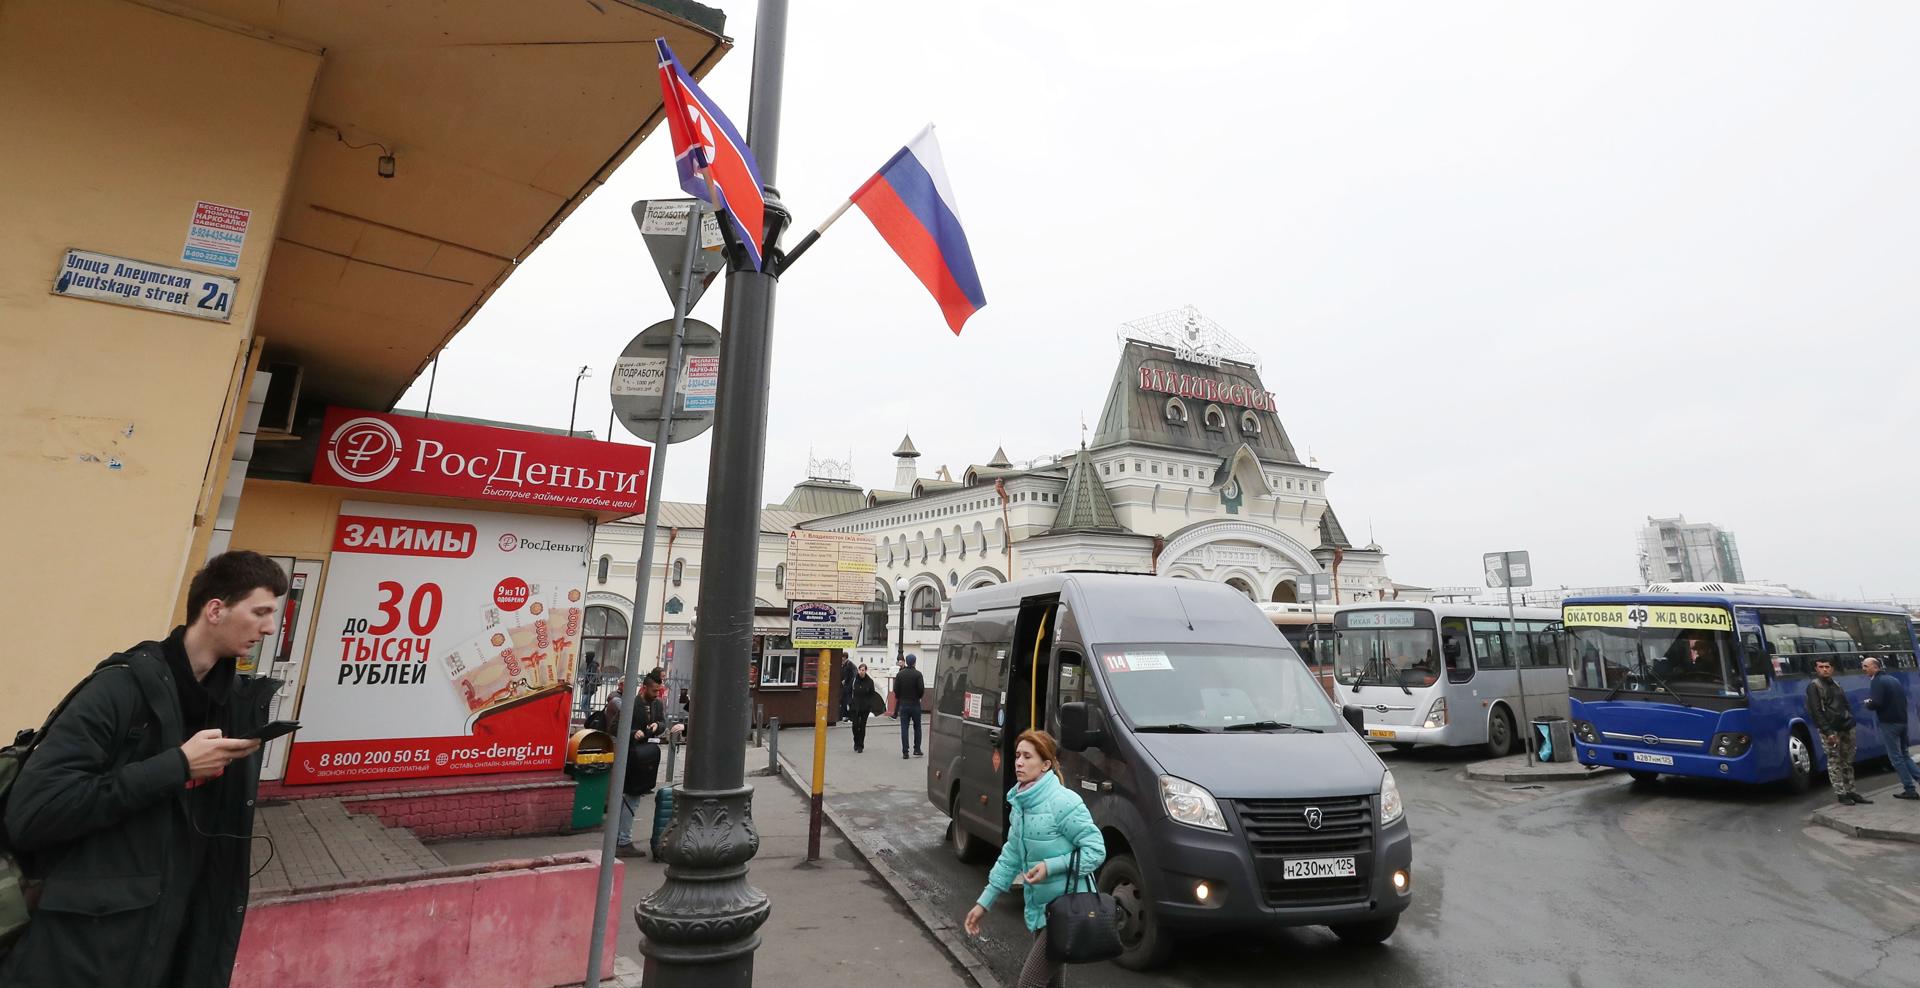 Dos provincias chinas podrán enviar mercancías a través del puerto ruso de Vladivostok